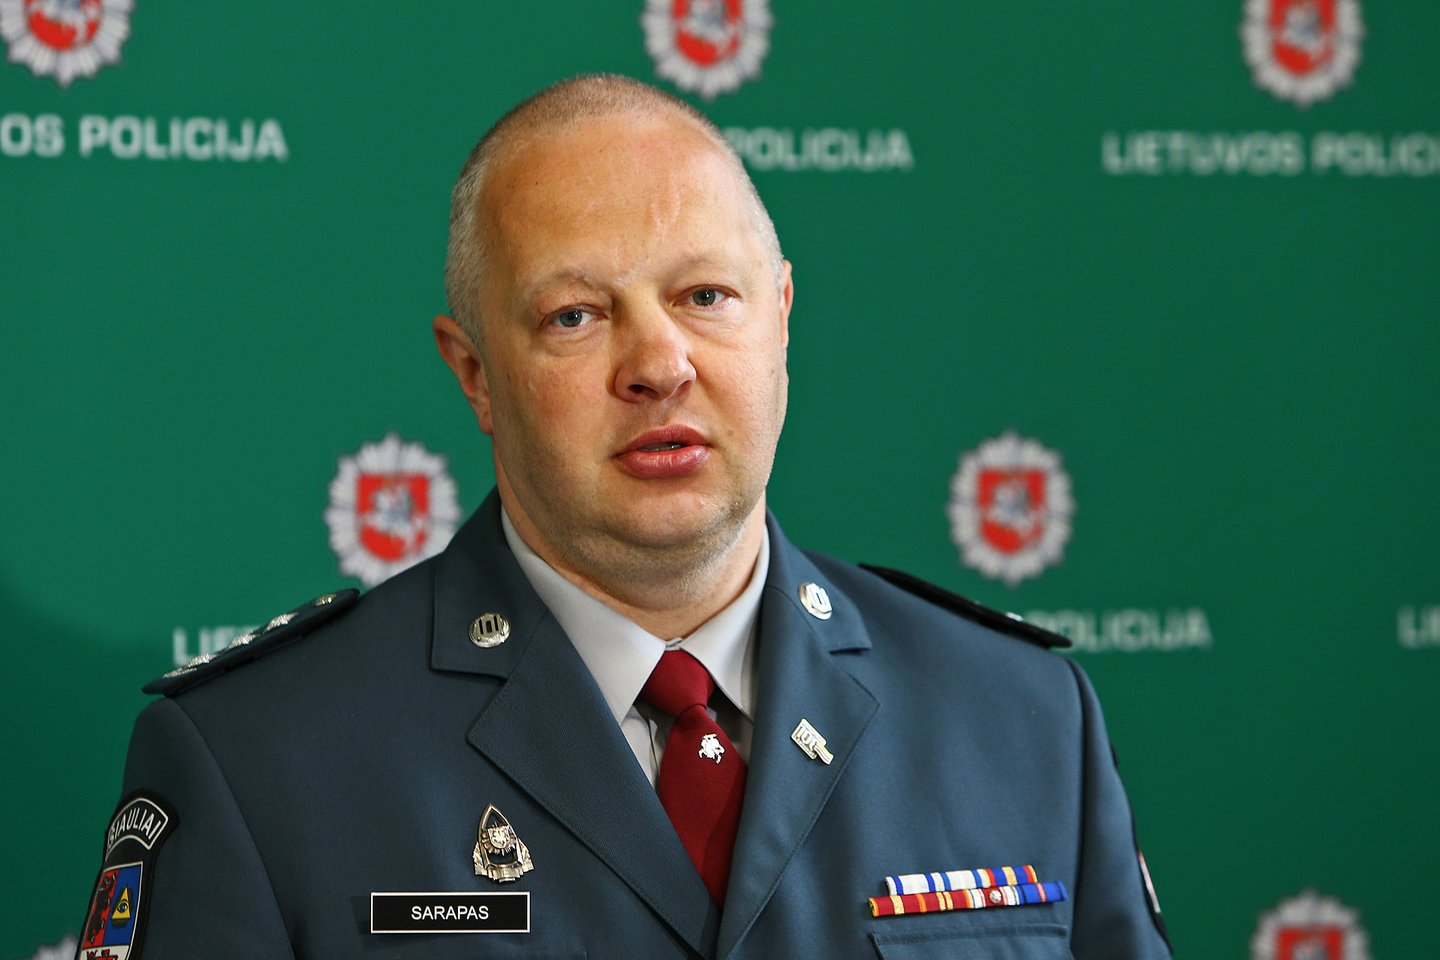  Šiaulių AVPK viršininkas R.Sarapas sakė, kad įtariamasis buvo sekamas 4 mėnesius.<br> G.Šiupario nuotr.